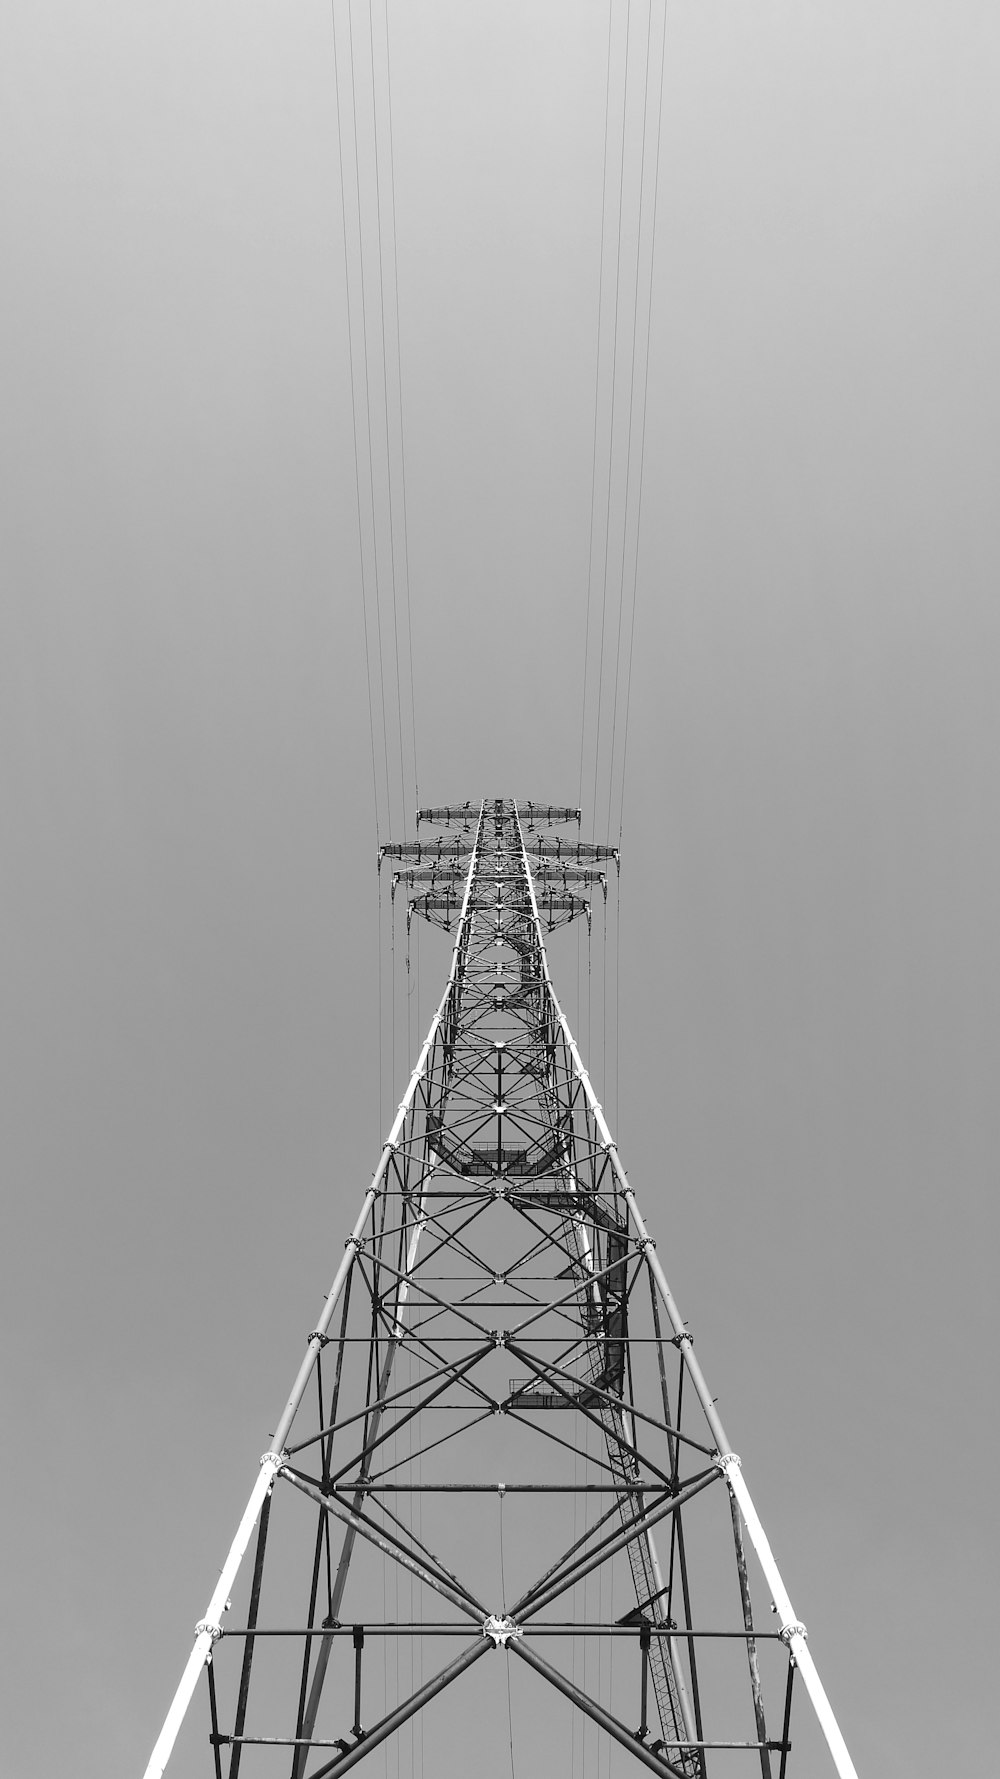 Fotografía en escala de grises de la torre metálica